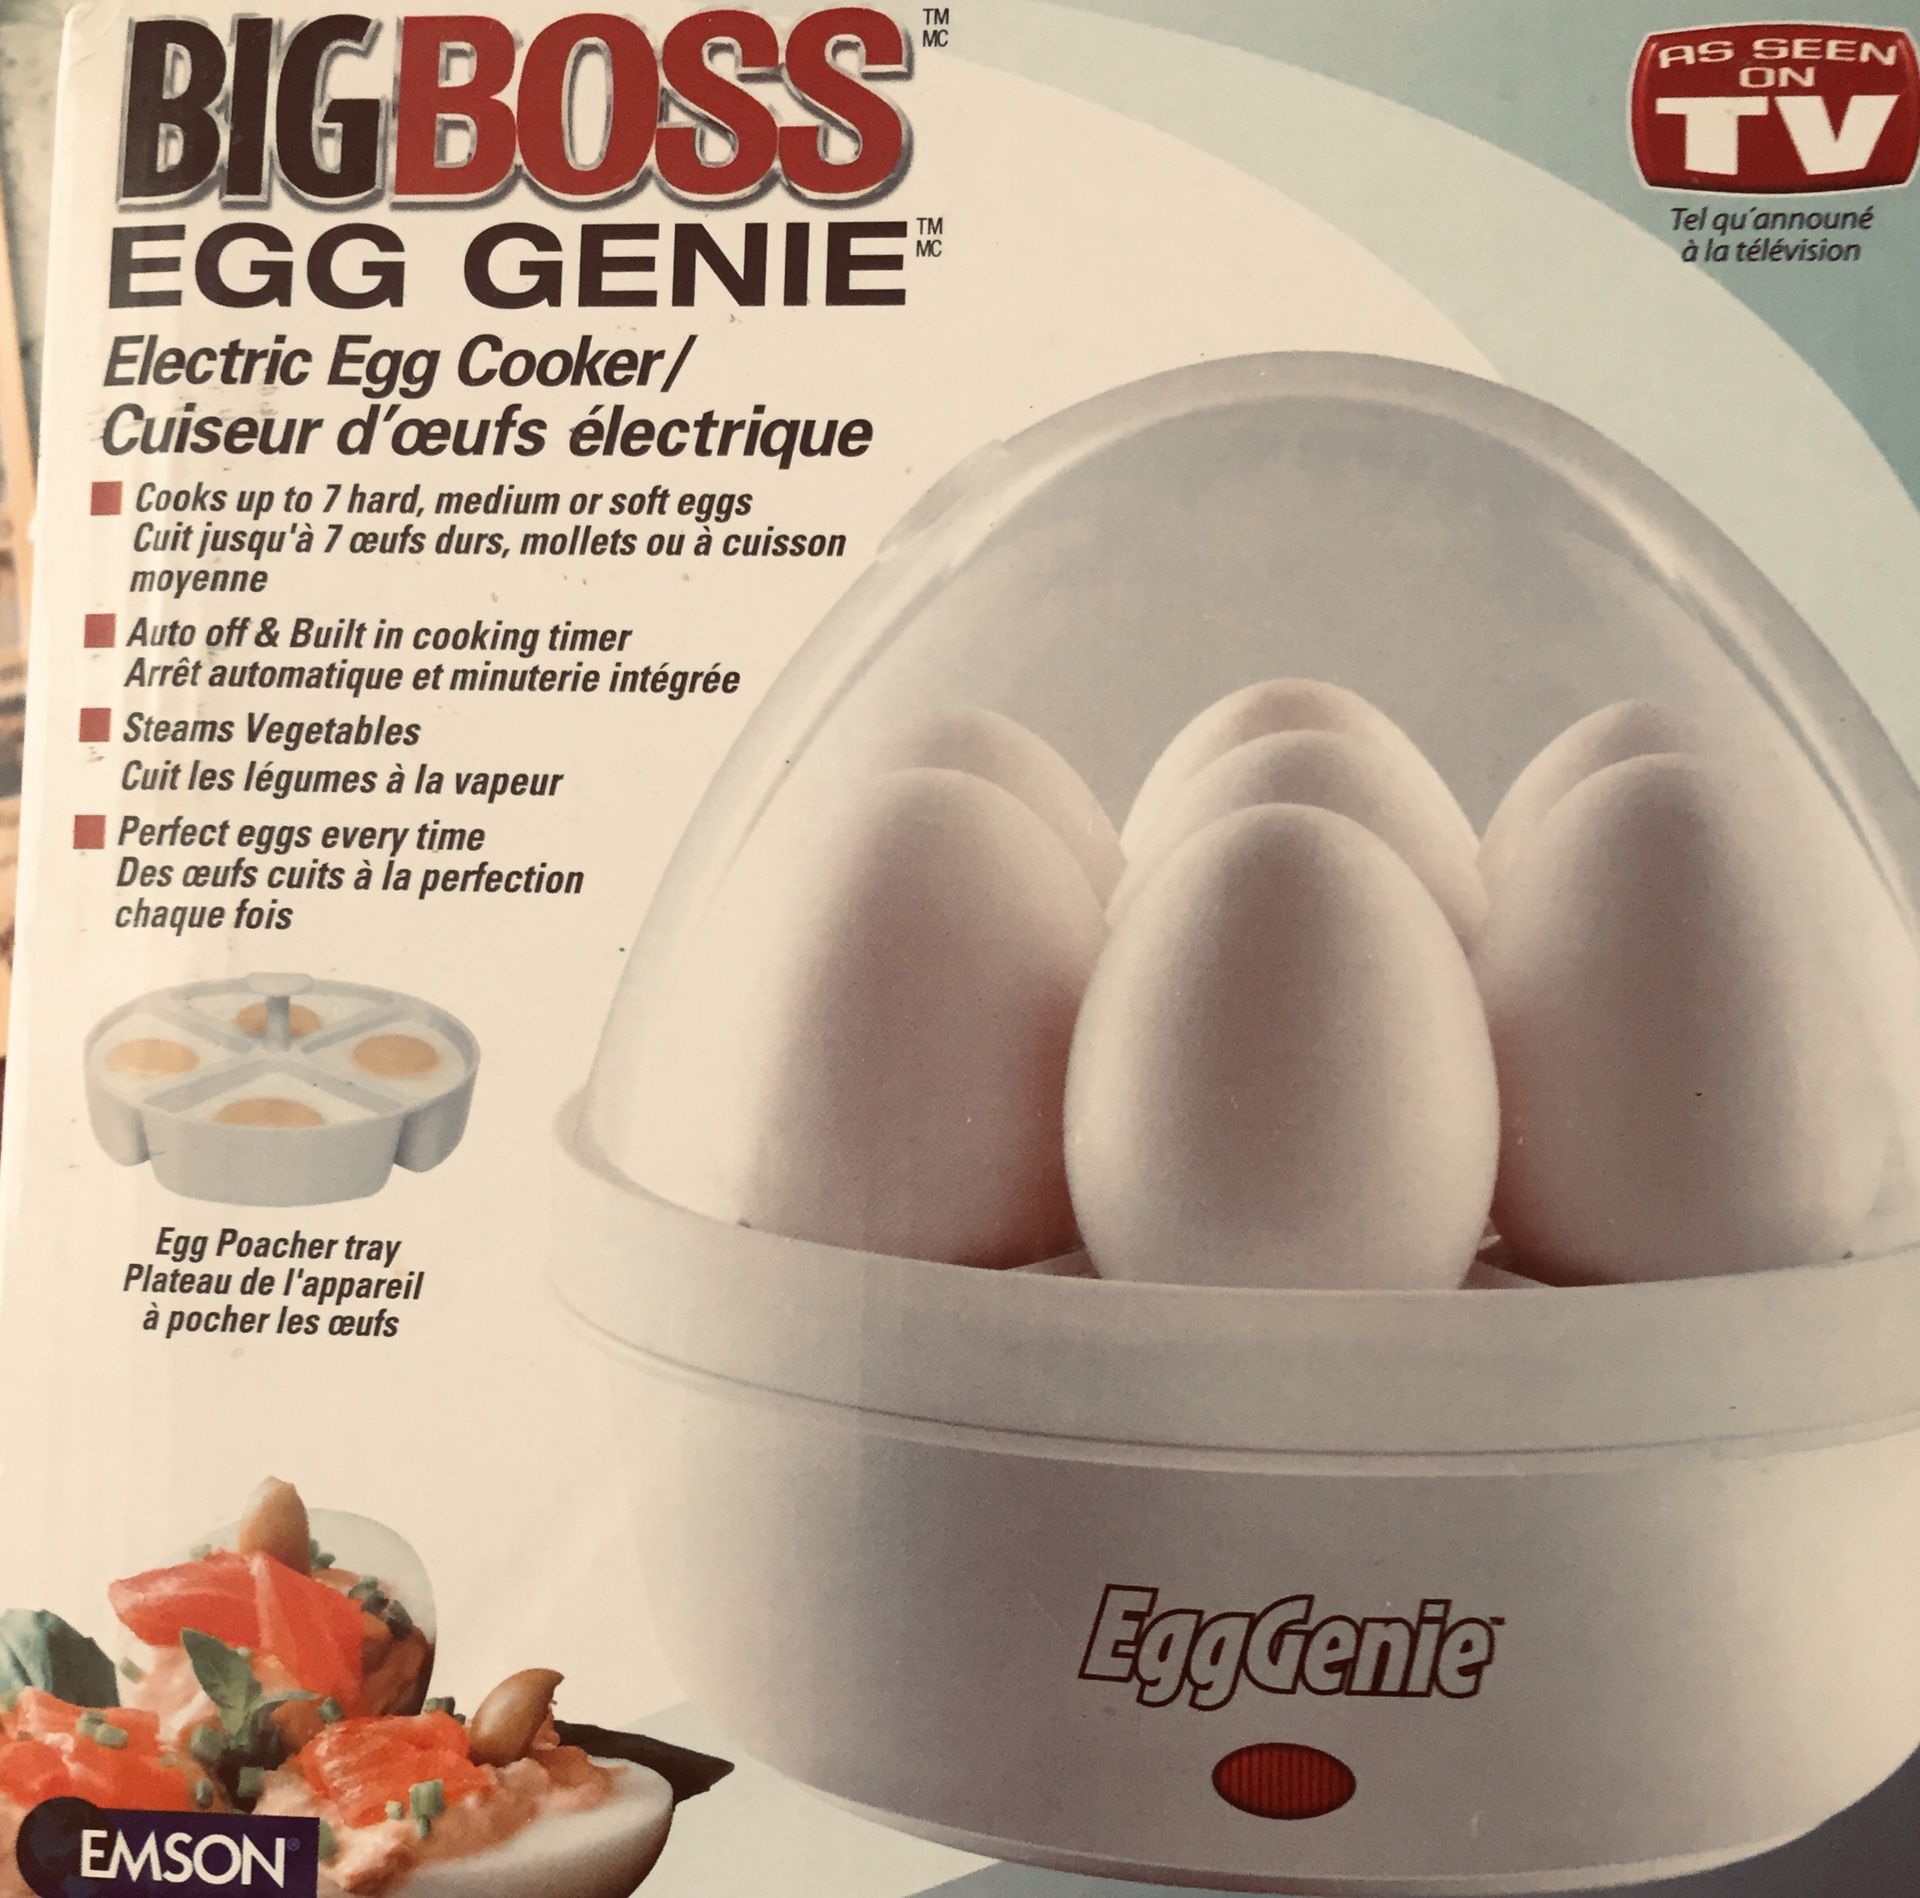 Electric egg cooker brand new Big boss egg gene